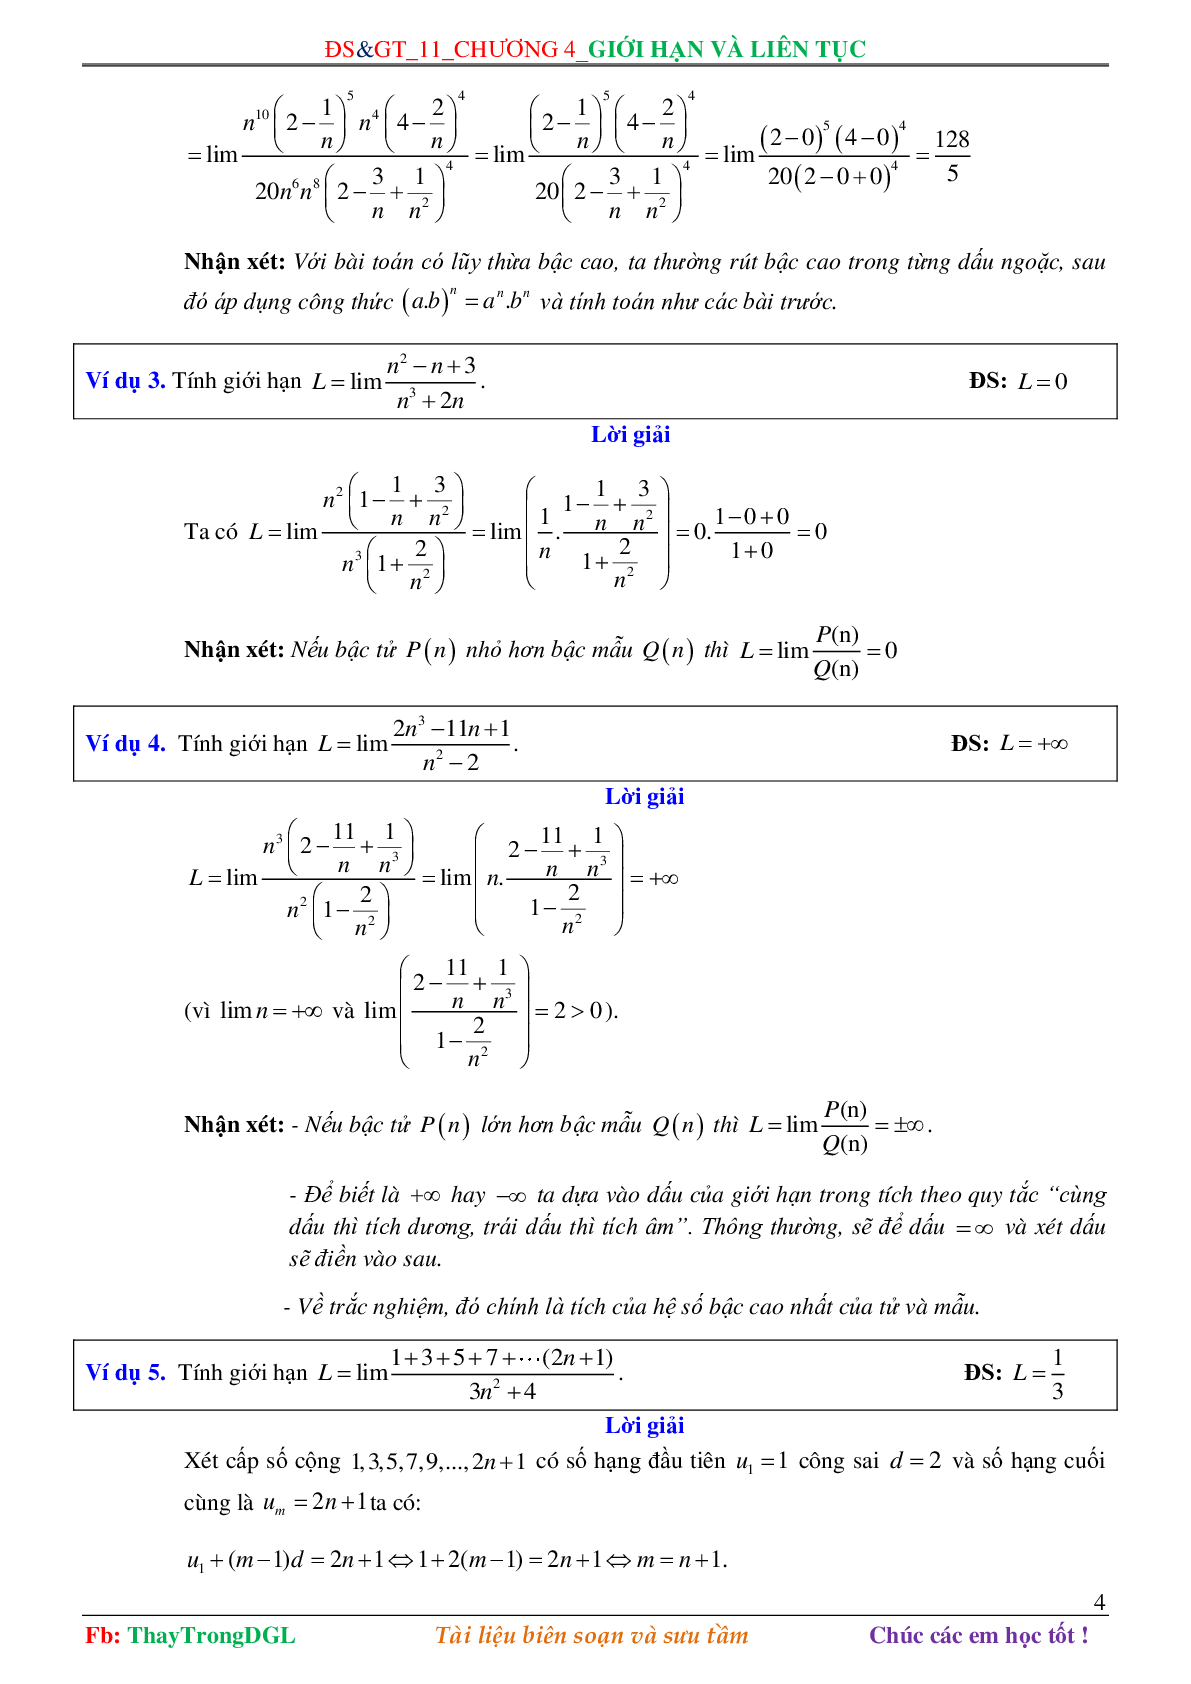 Các dạng toán về Giới hạn và liên tục (có bài tập kèm theo) (trang 4)